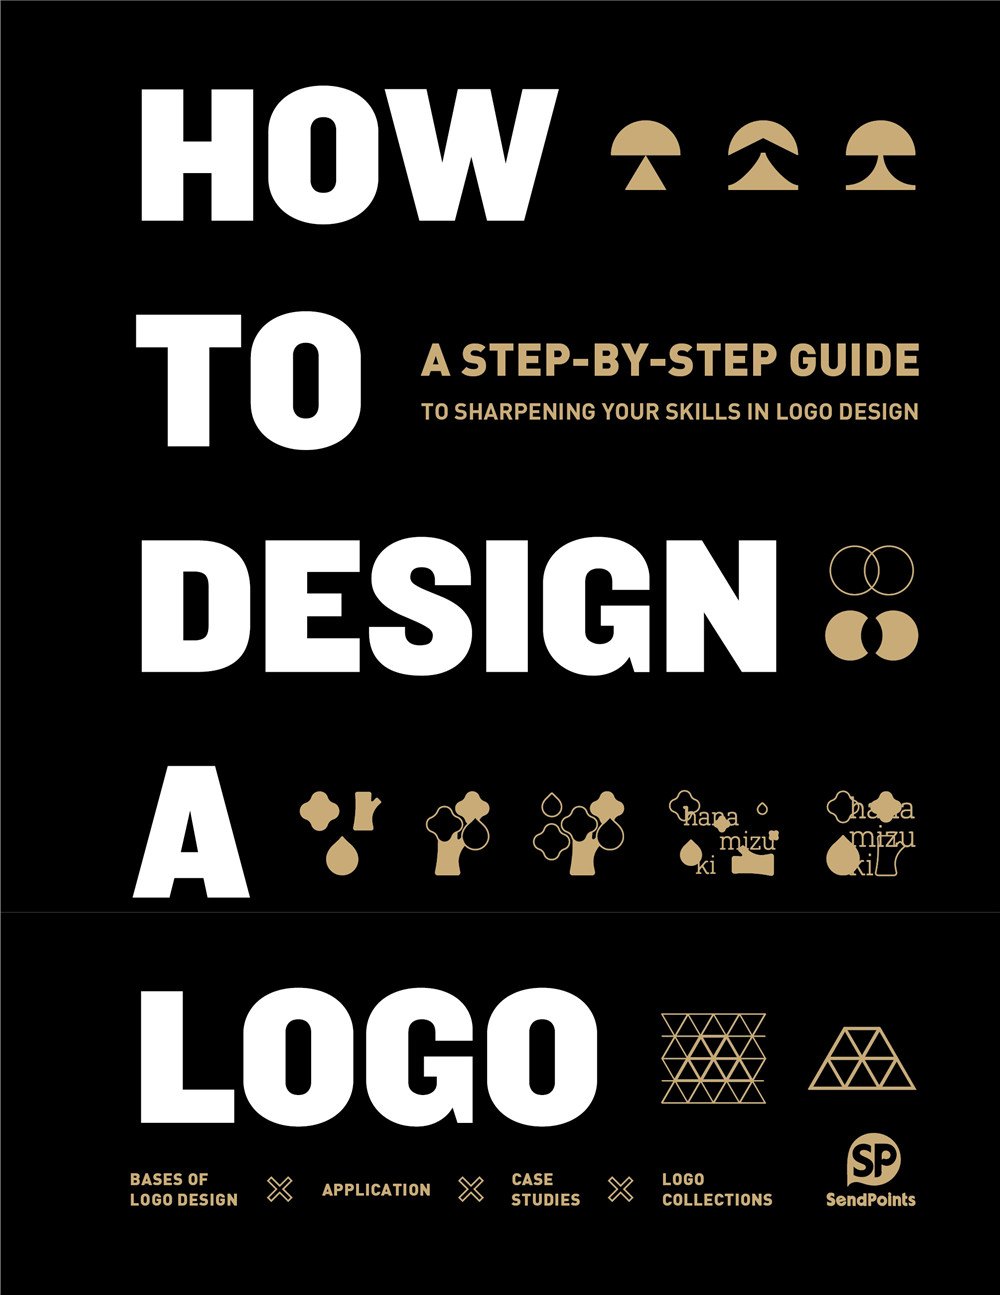 HOW TO DESIGN A LOGO